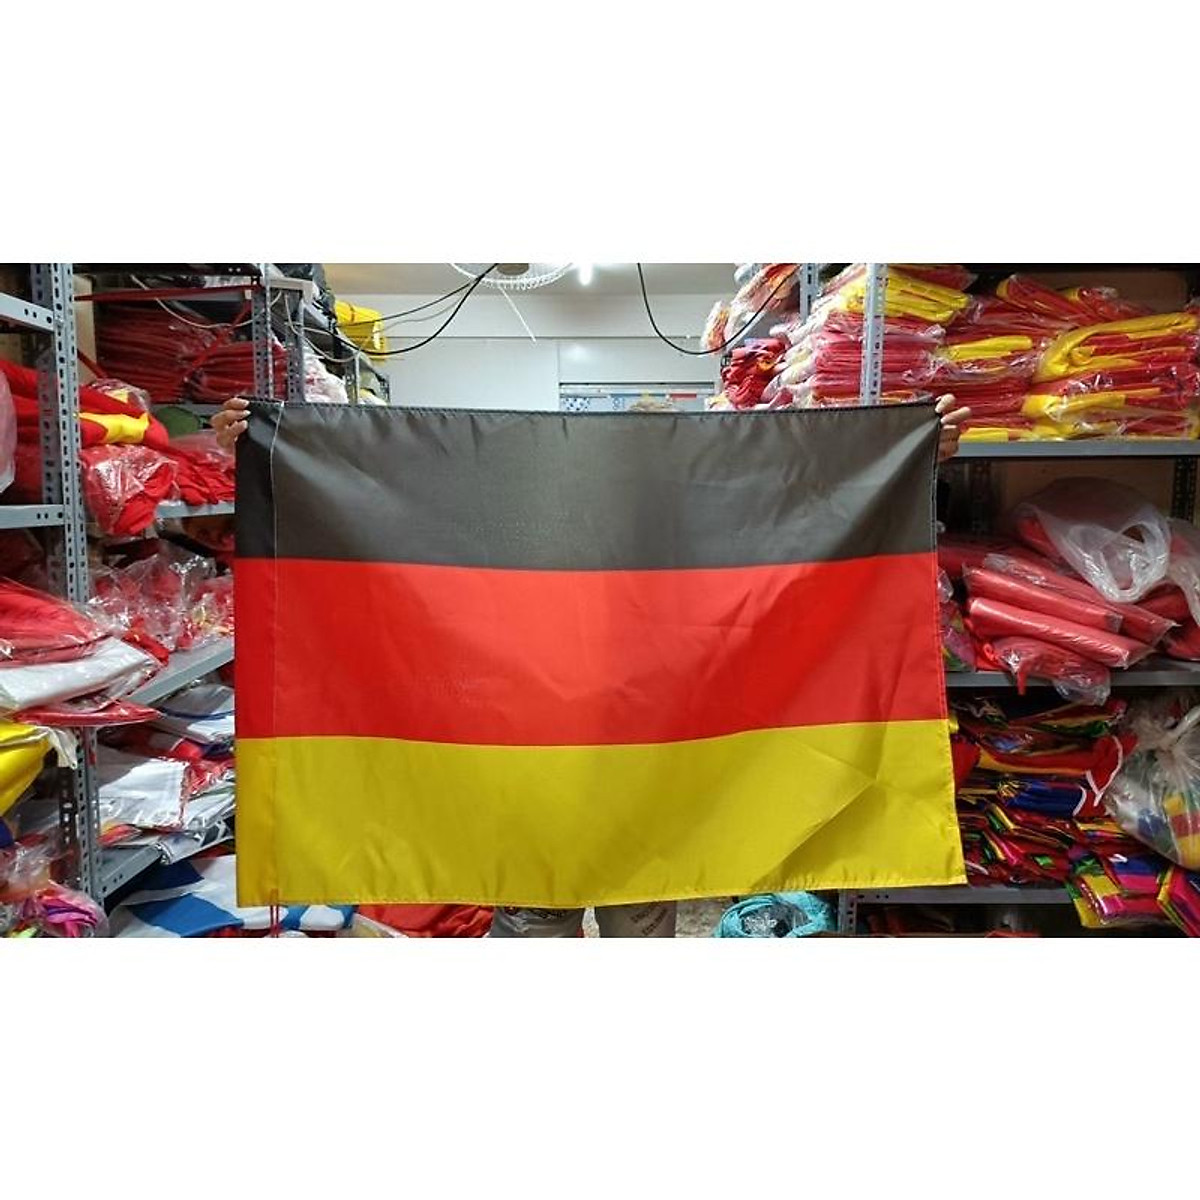 Mua cờ Đức: Cờ Đức là một trong những biểu tượng đặc trưng của đất nước này. Bên cạnh ý nghĩa lịch sử và văn hóa, cờ Đức còn đem lại niềm tự hào và tinh thần đoàn kết cho người dân nơi đây. Hãy sở hữu ngay một bức cờ Đức để tận hưởng vẻ đẹp và ý nghĩa của nó.